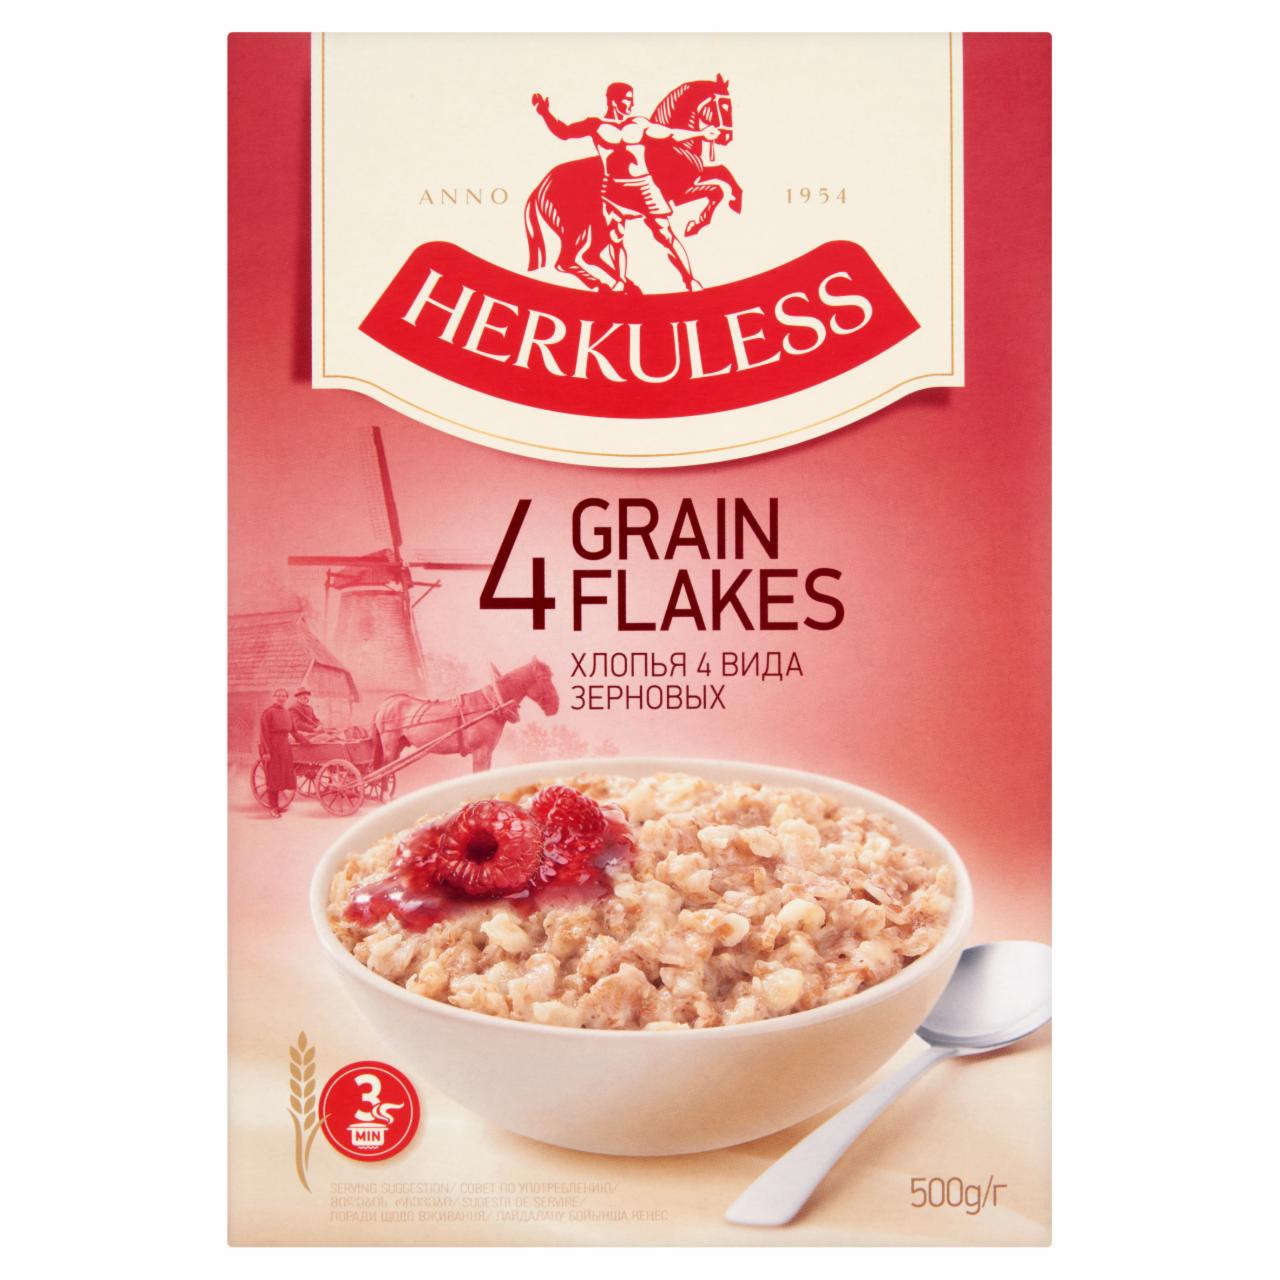 Képek - Herkuless reggeliző gabonapehely keverék 500 g